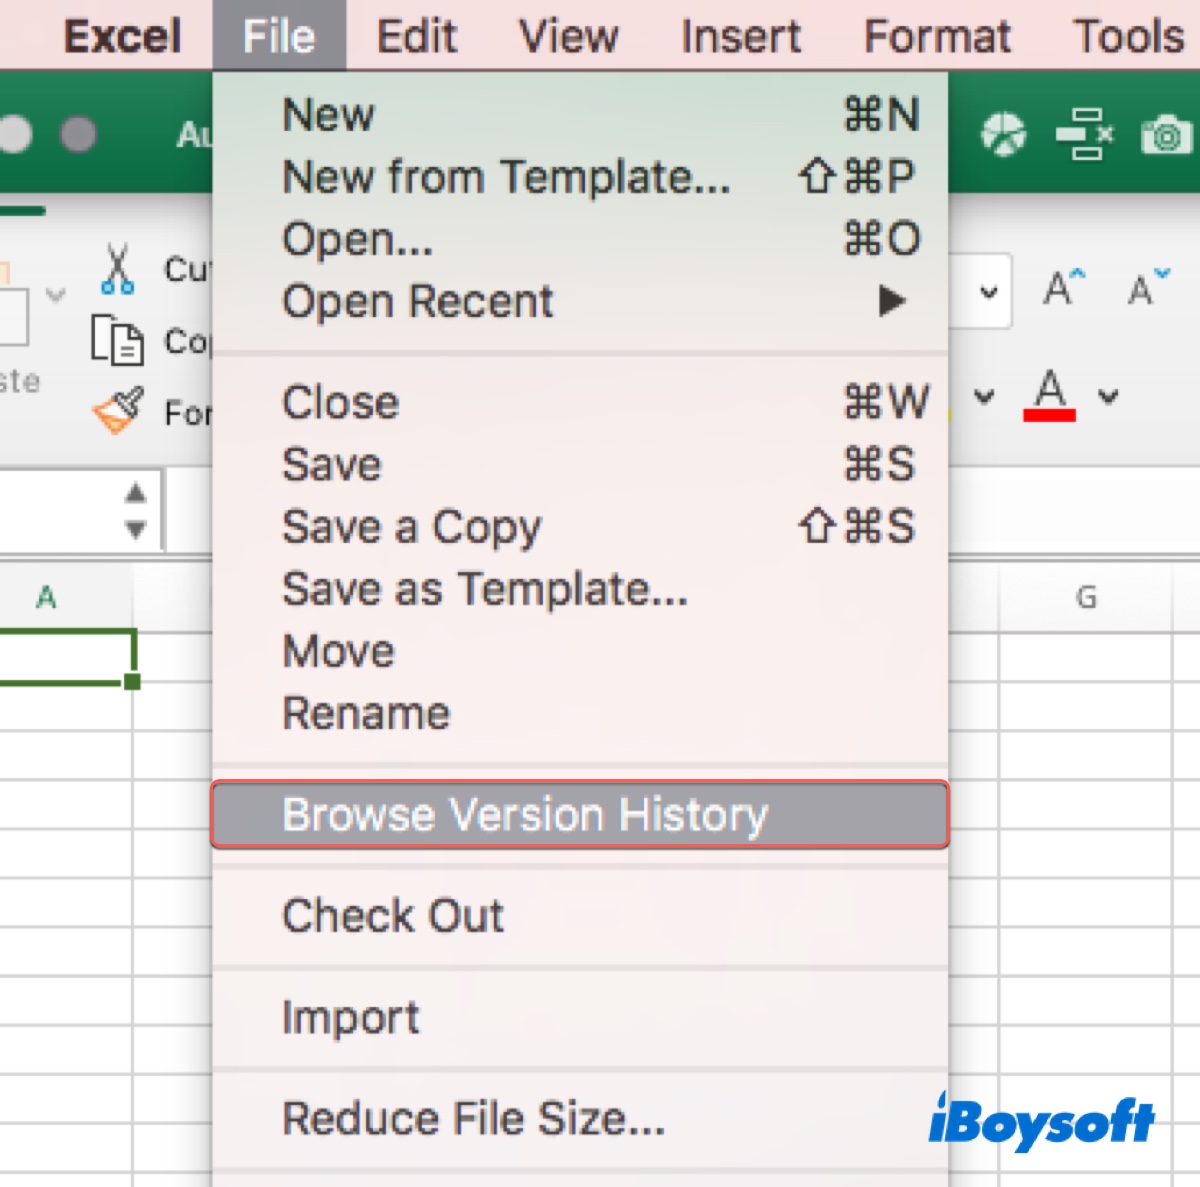 Historial de versiones deshabilitado en Excel